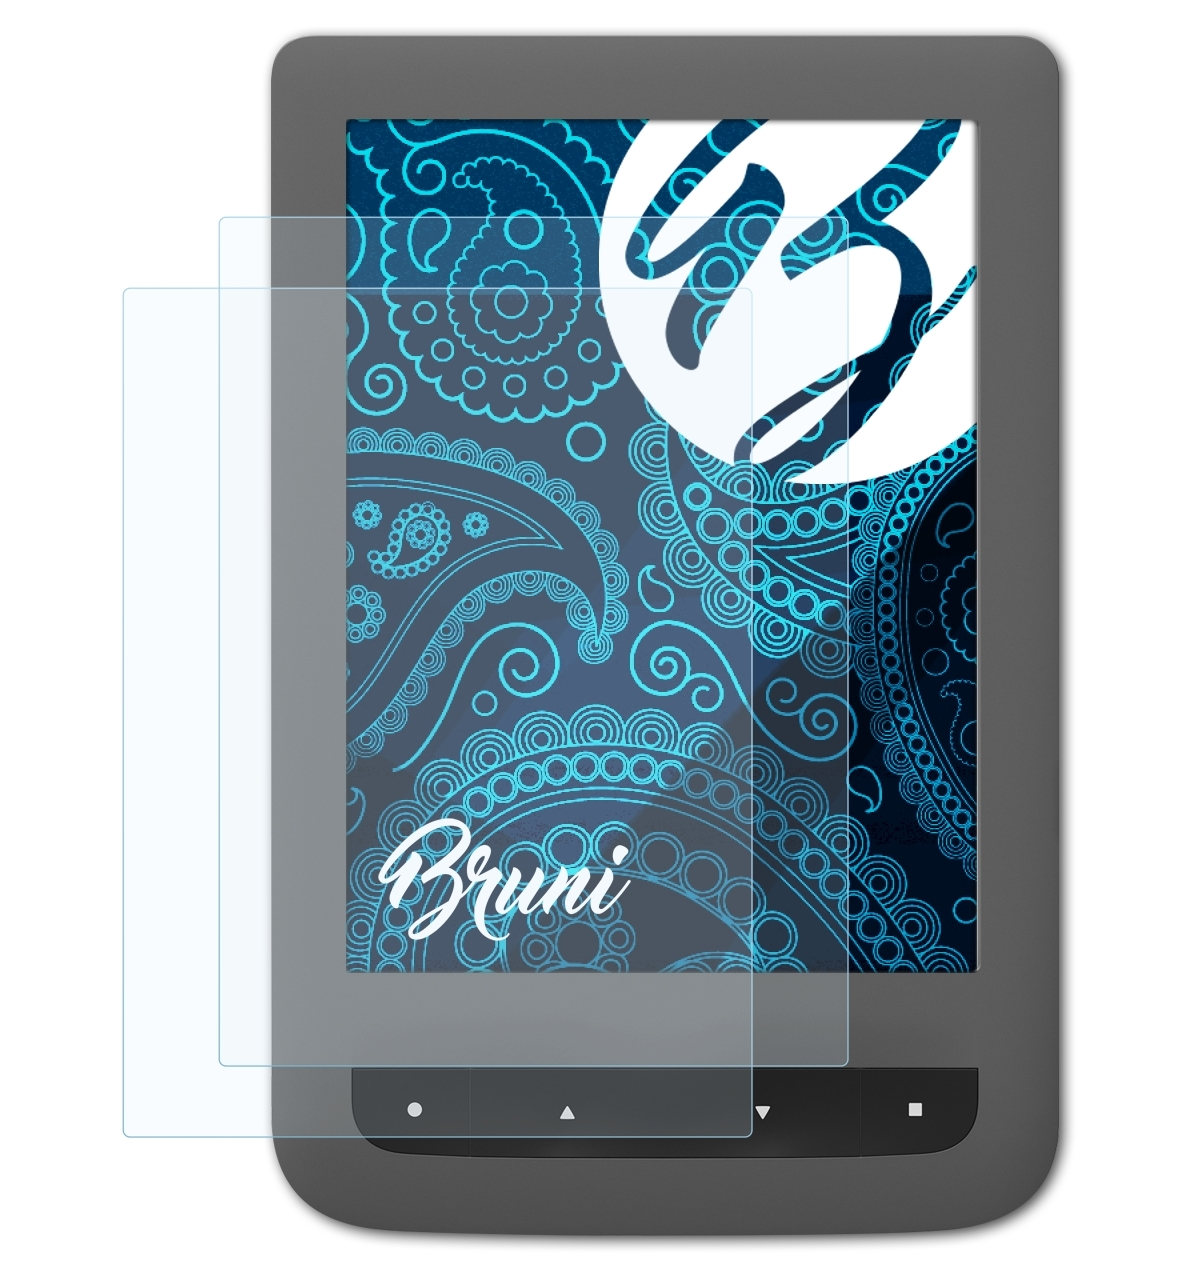 / 3) BRUNI Lux 2x Schutzfolie(für Basics-Clear 2 Touch PocketBook